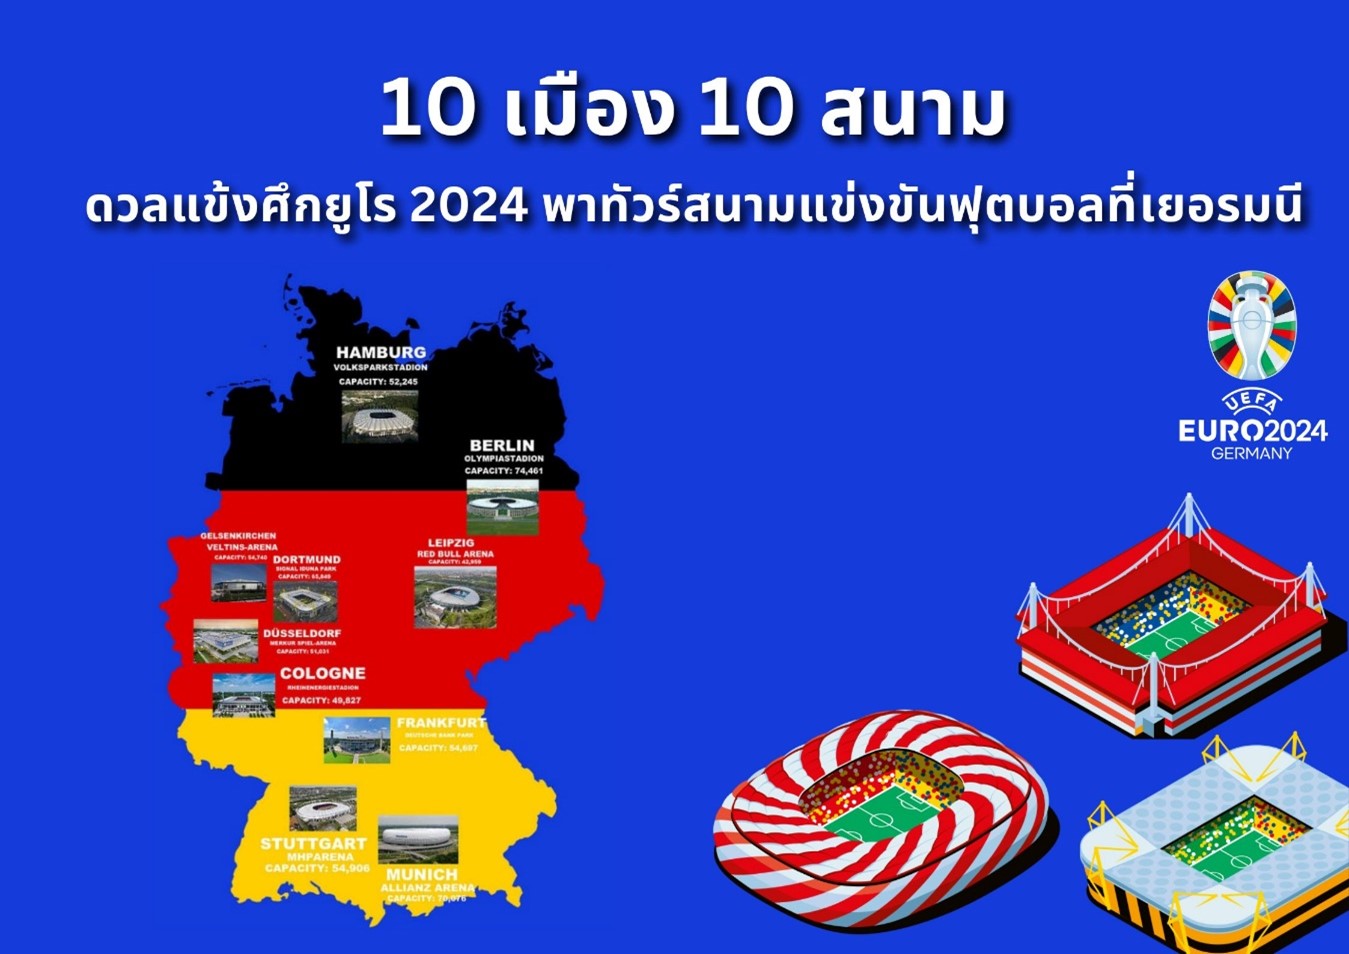 ยูโร 2024 - 10 เมือง 10 สนามดวลแข้ง พาทัวร์สนามที่เยอรมนี